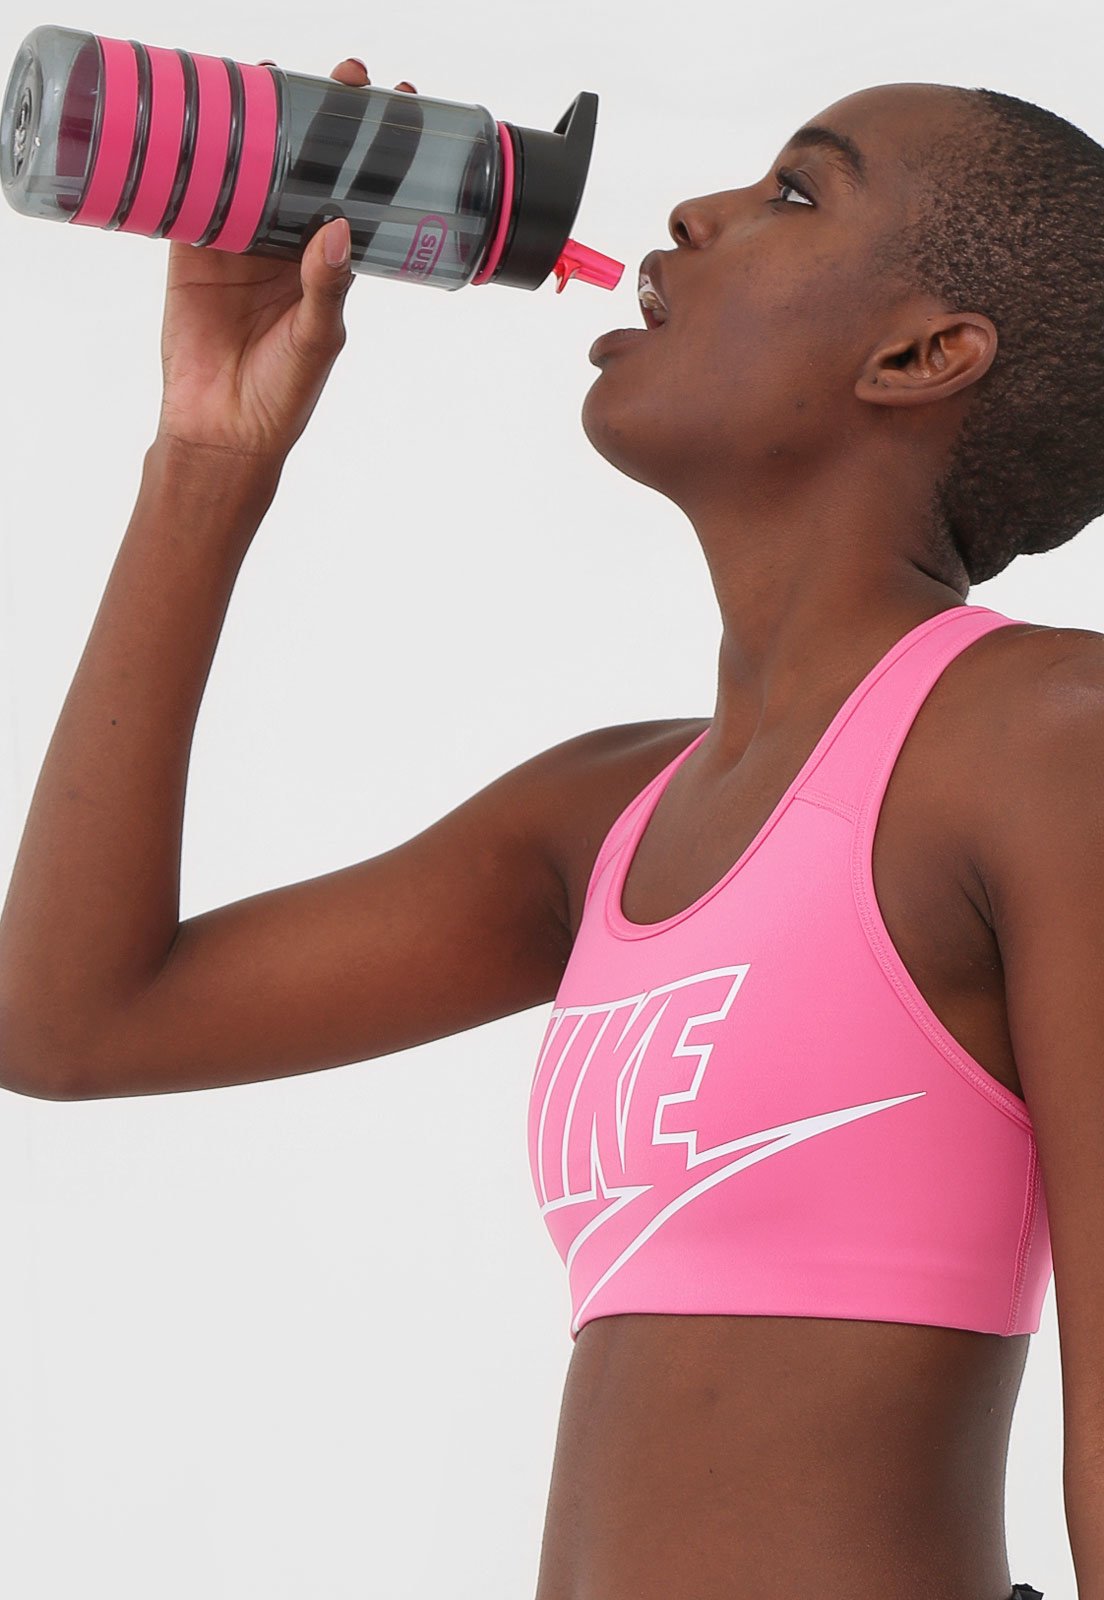 Top Nike Med Futura Bra Rosa - Compre Agora